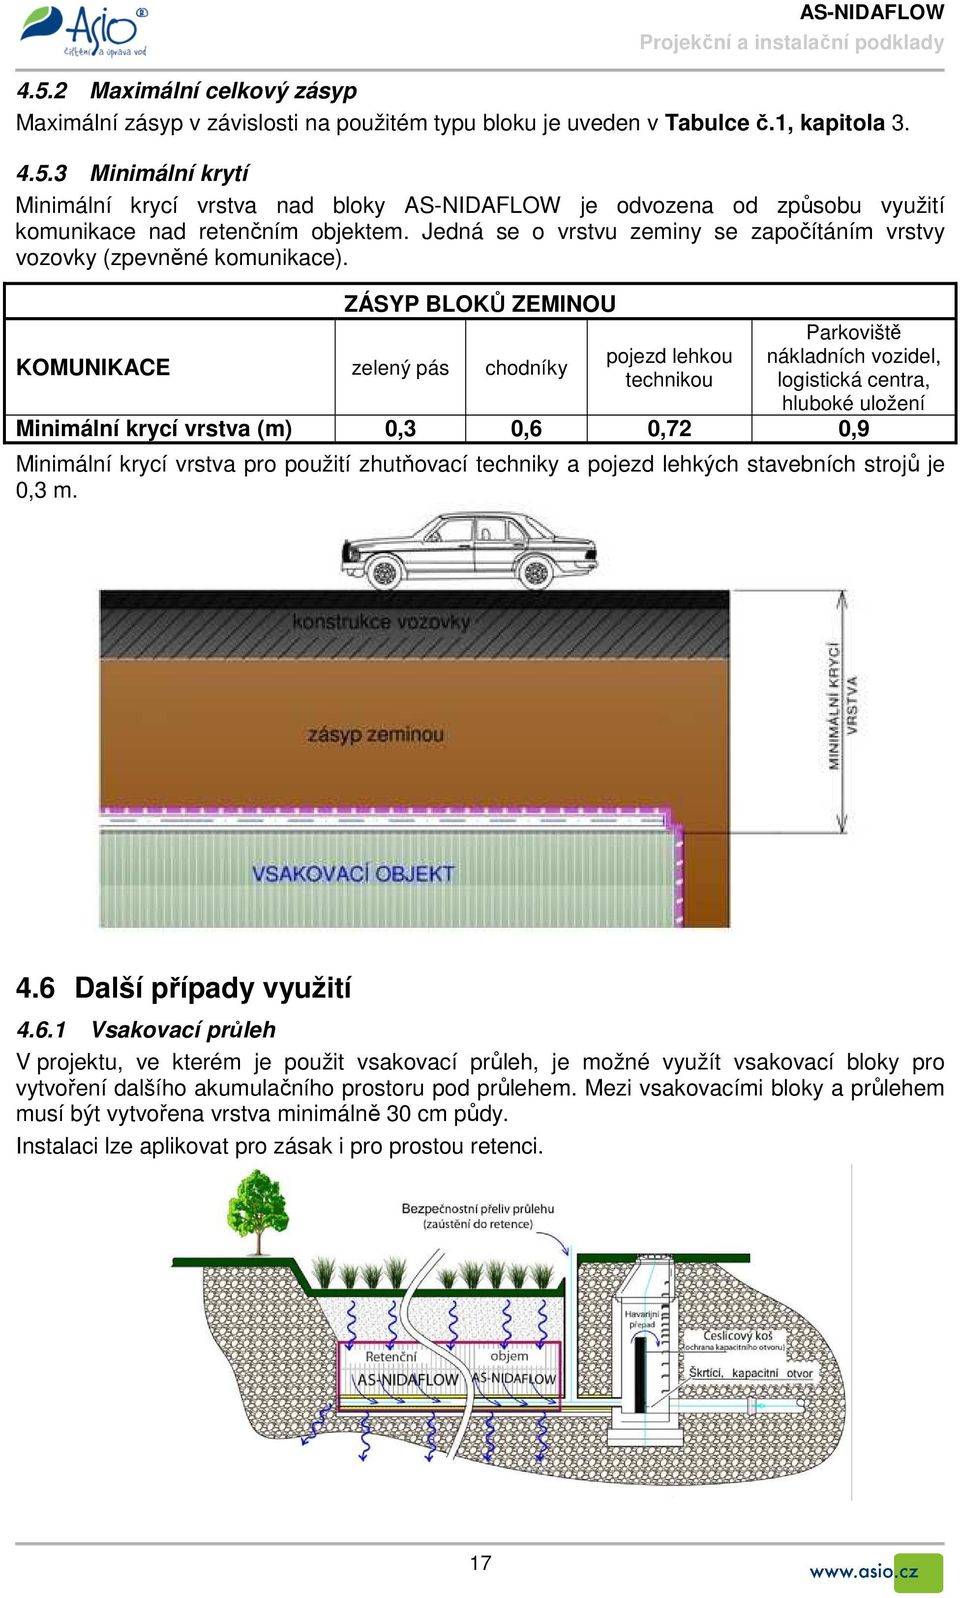 ZÁSYP BLOKŮ ZEMINOU KOMUNIKACE zelený pás chodníky pojezd lehkou technikou Parkoviště nákladních vozidel, logistická centra, hluboké uložení Minimální krycí vrstva (m) 0,3 0,6 0,72 0,9 Minimální